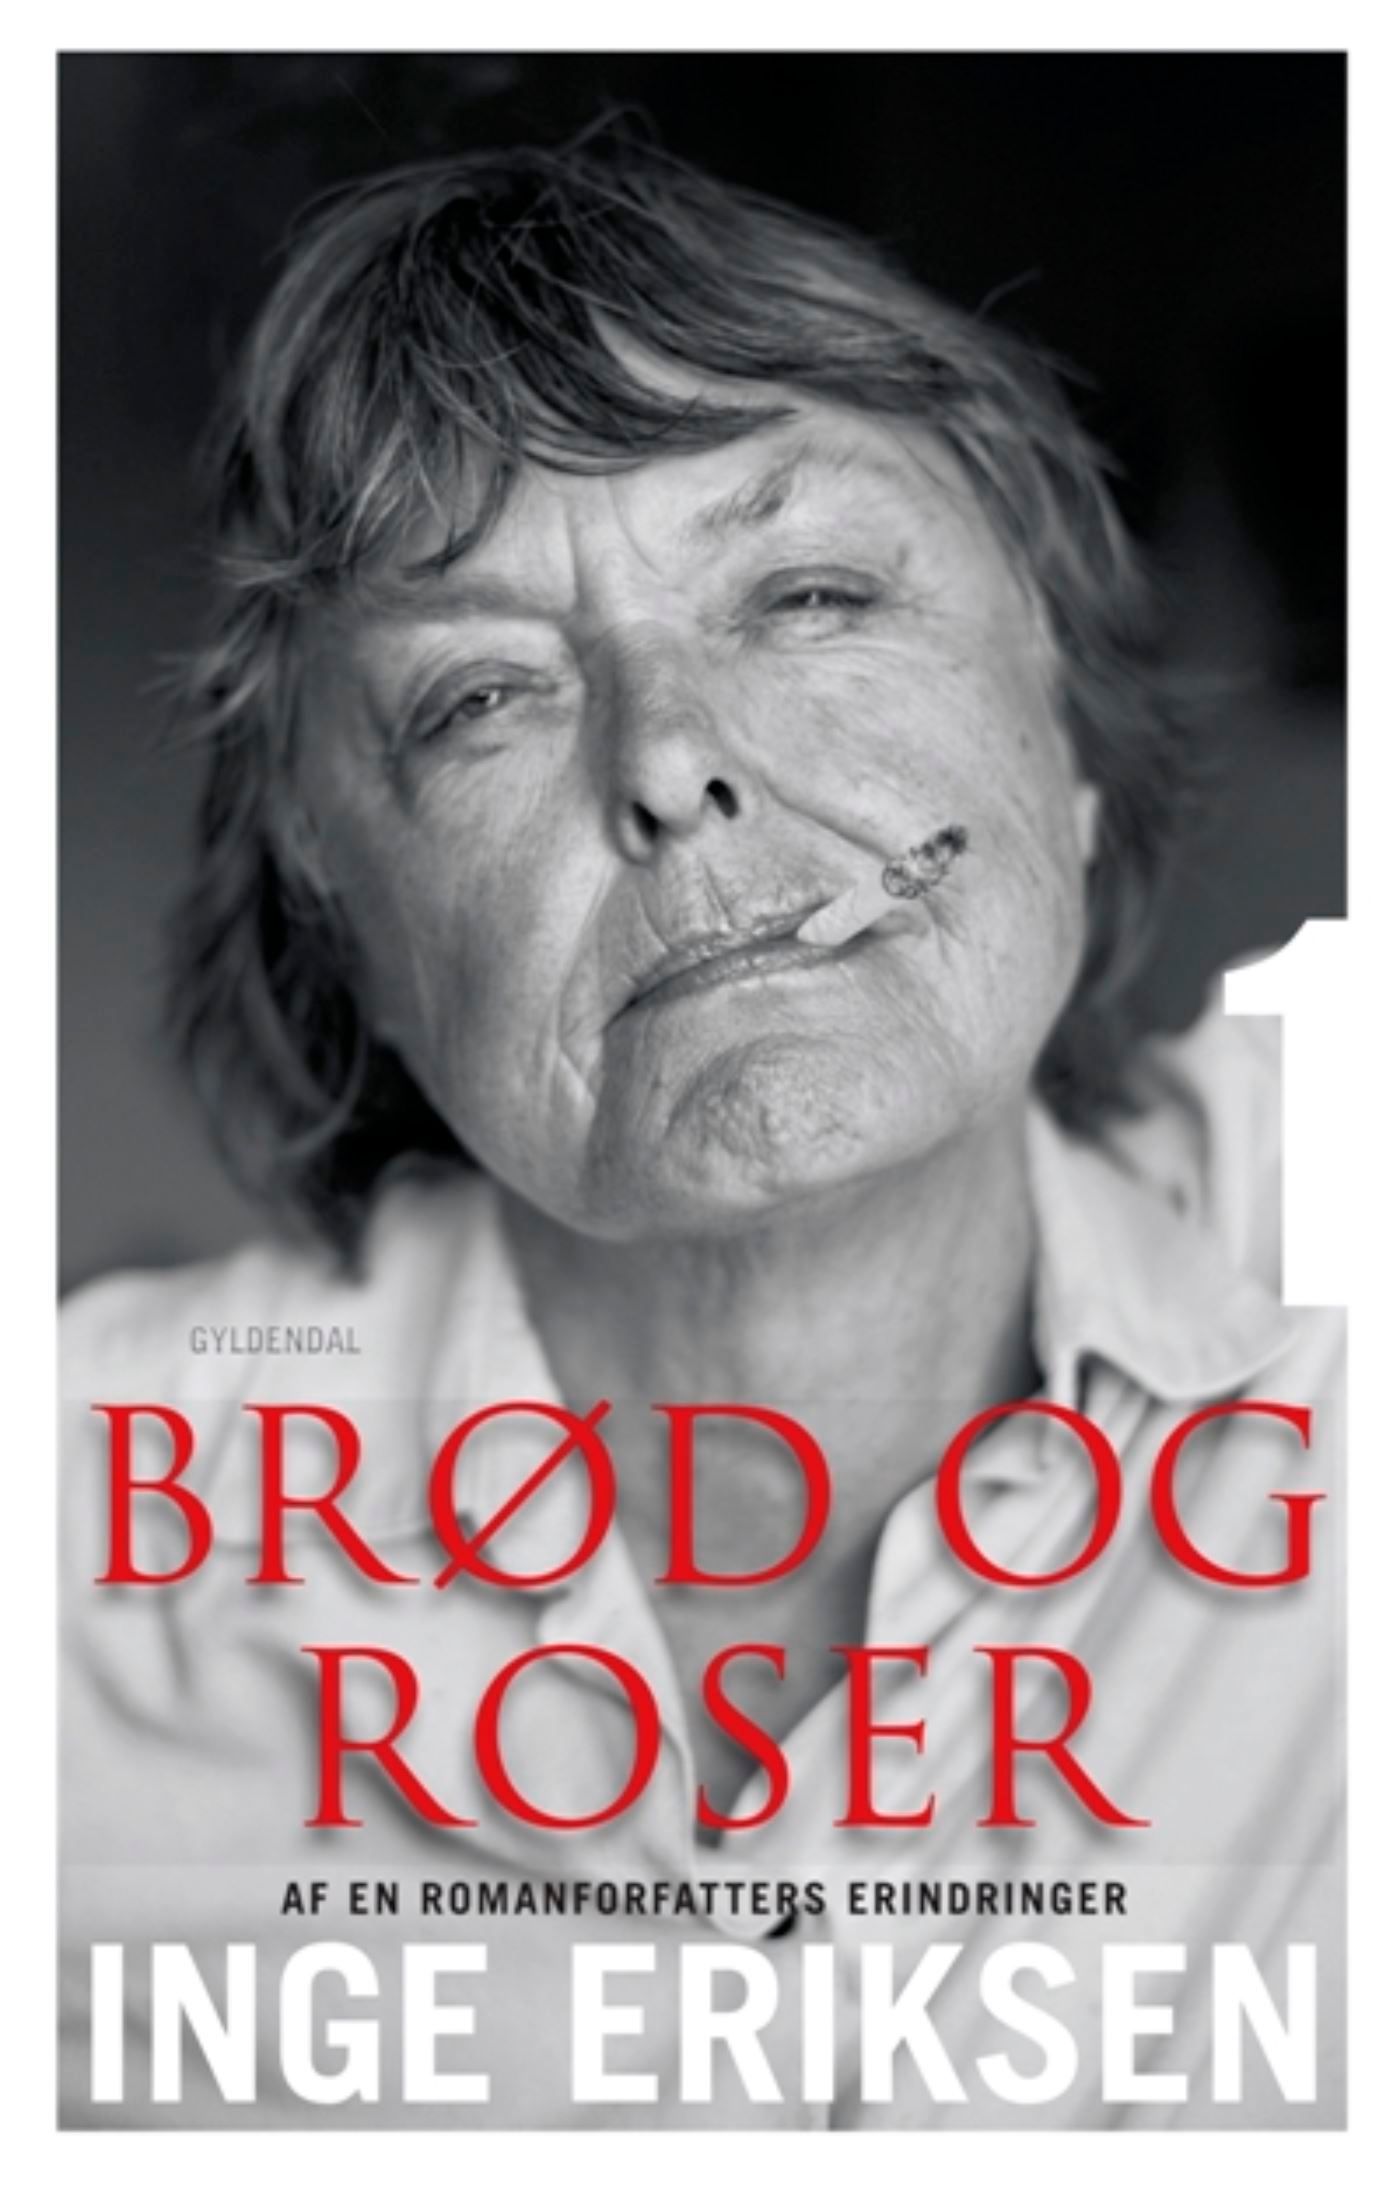 Brød og roser, ljudbok av Inge Eriksen